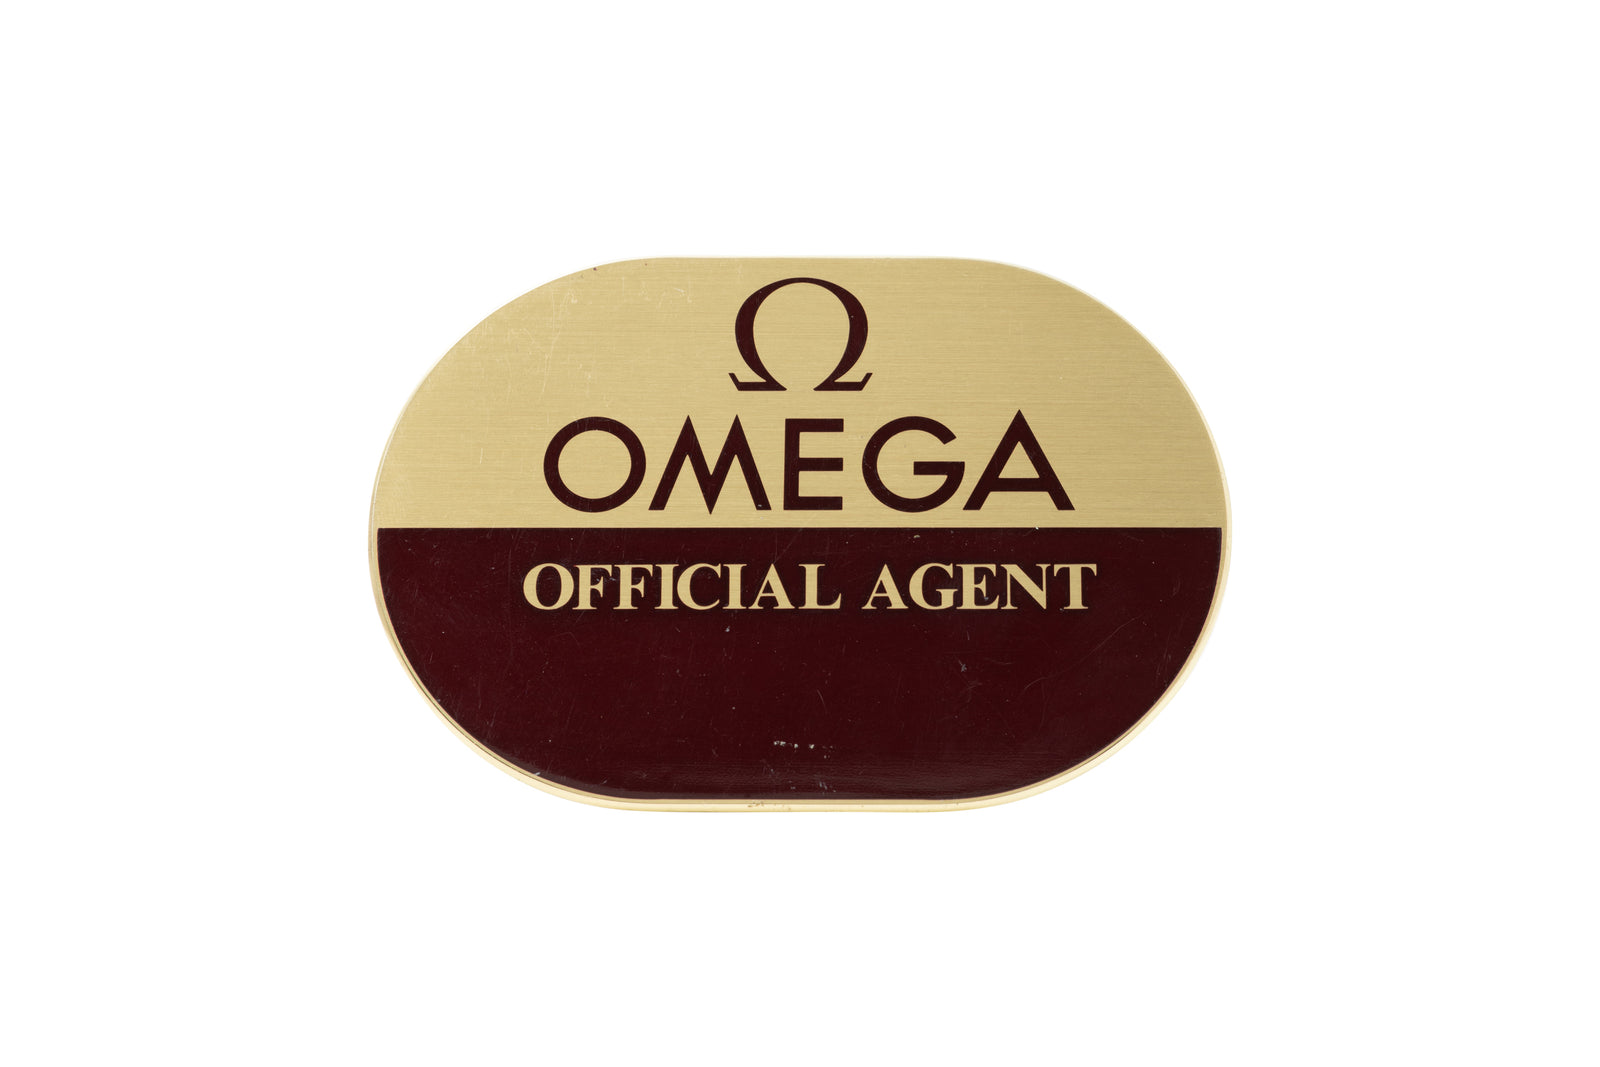 Omega Brass Dealer Display Plaque